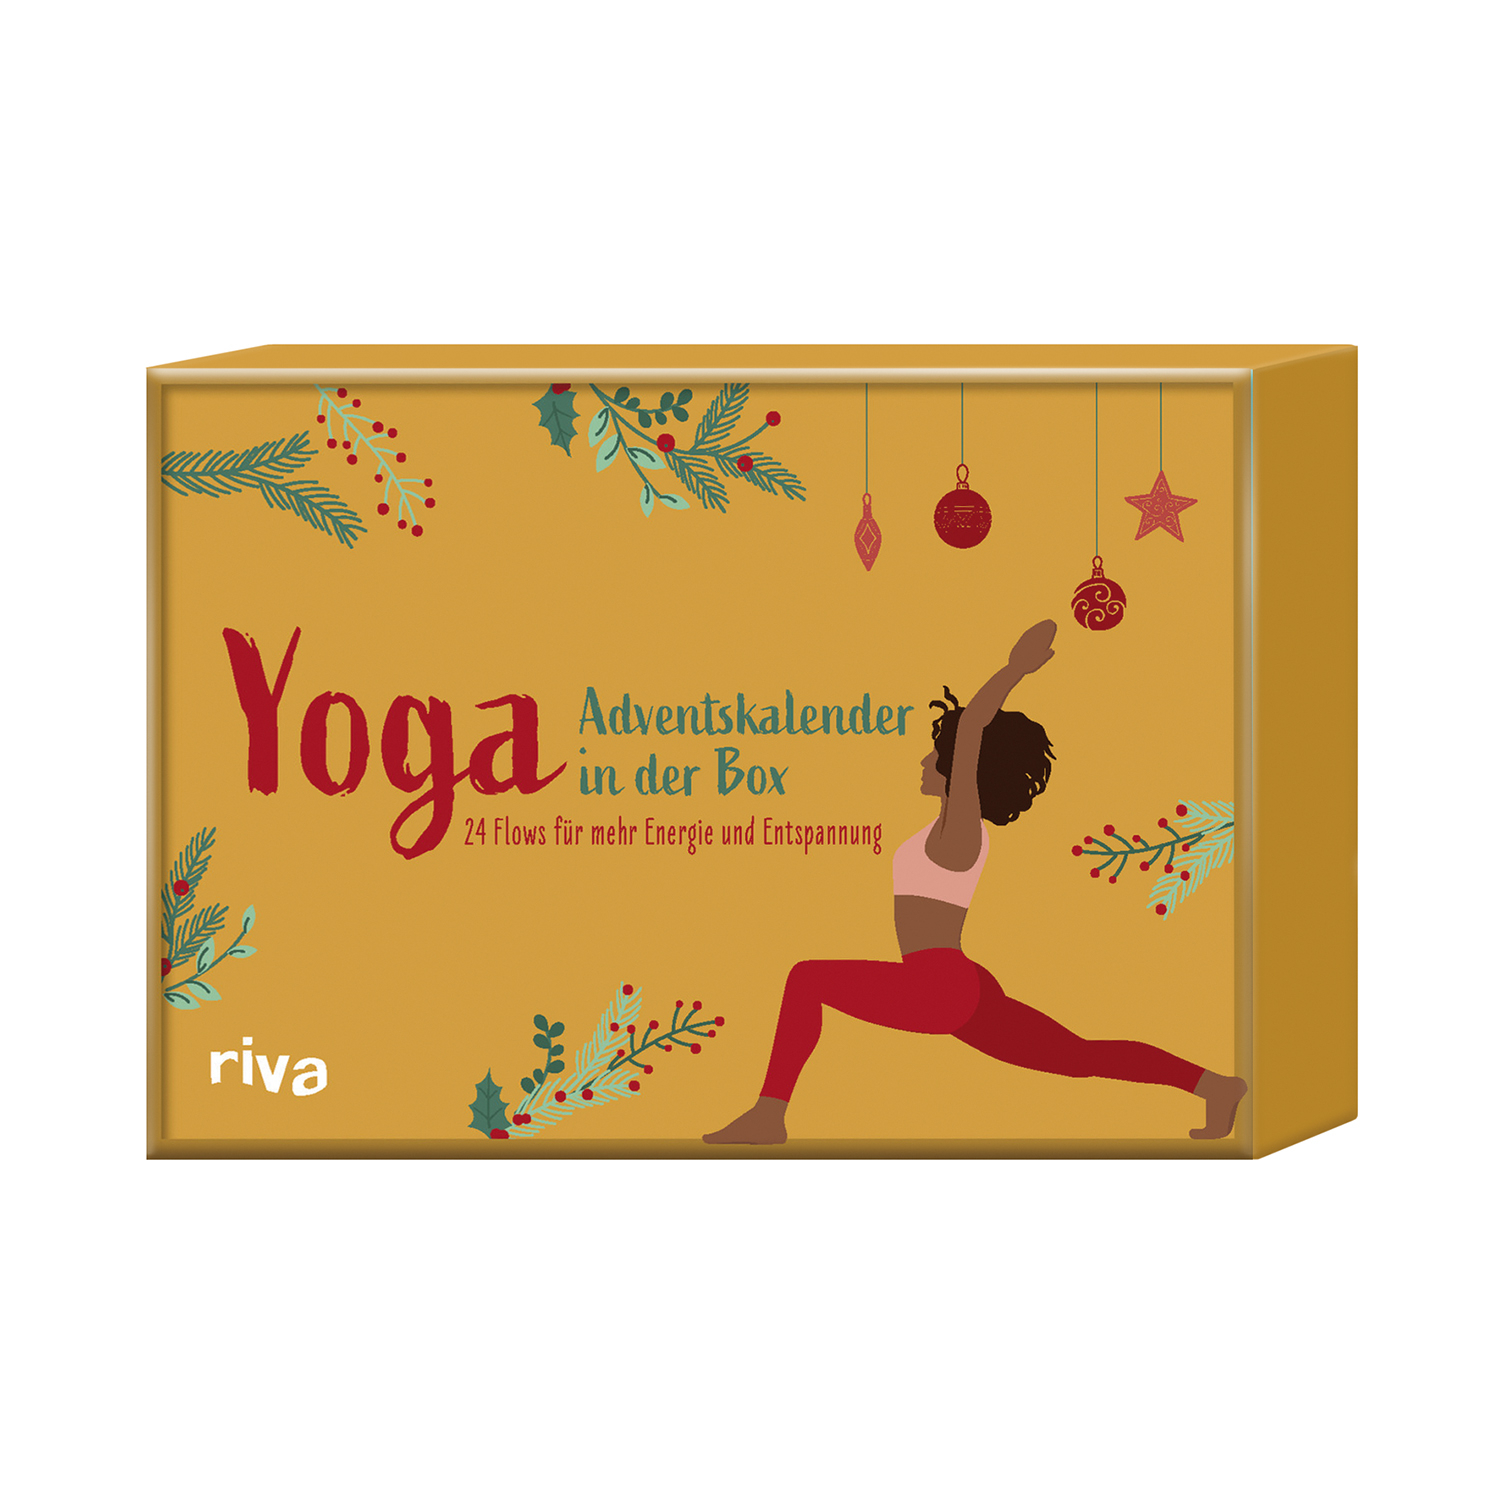 Yoga – Adventskalender in der Box, Produktbild 1